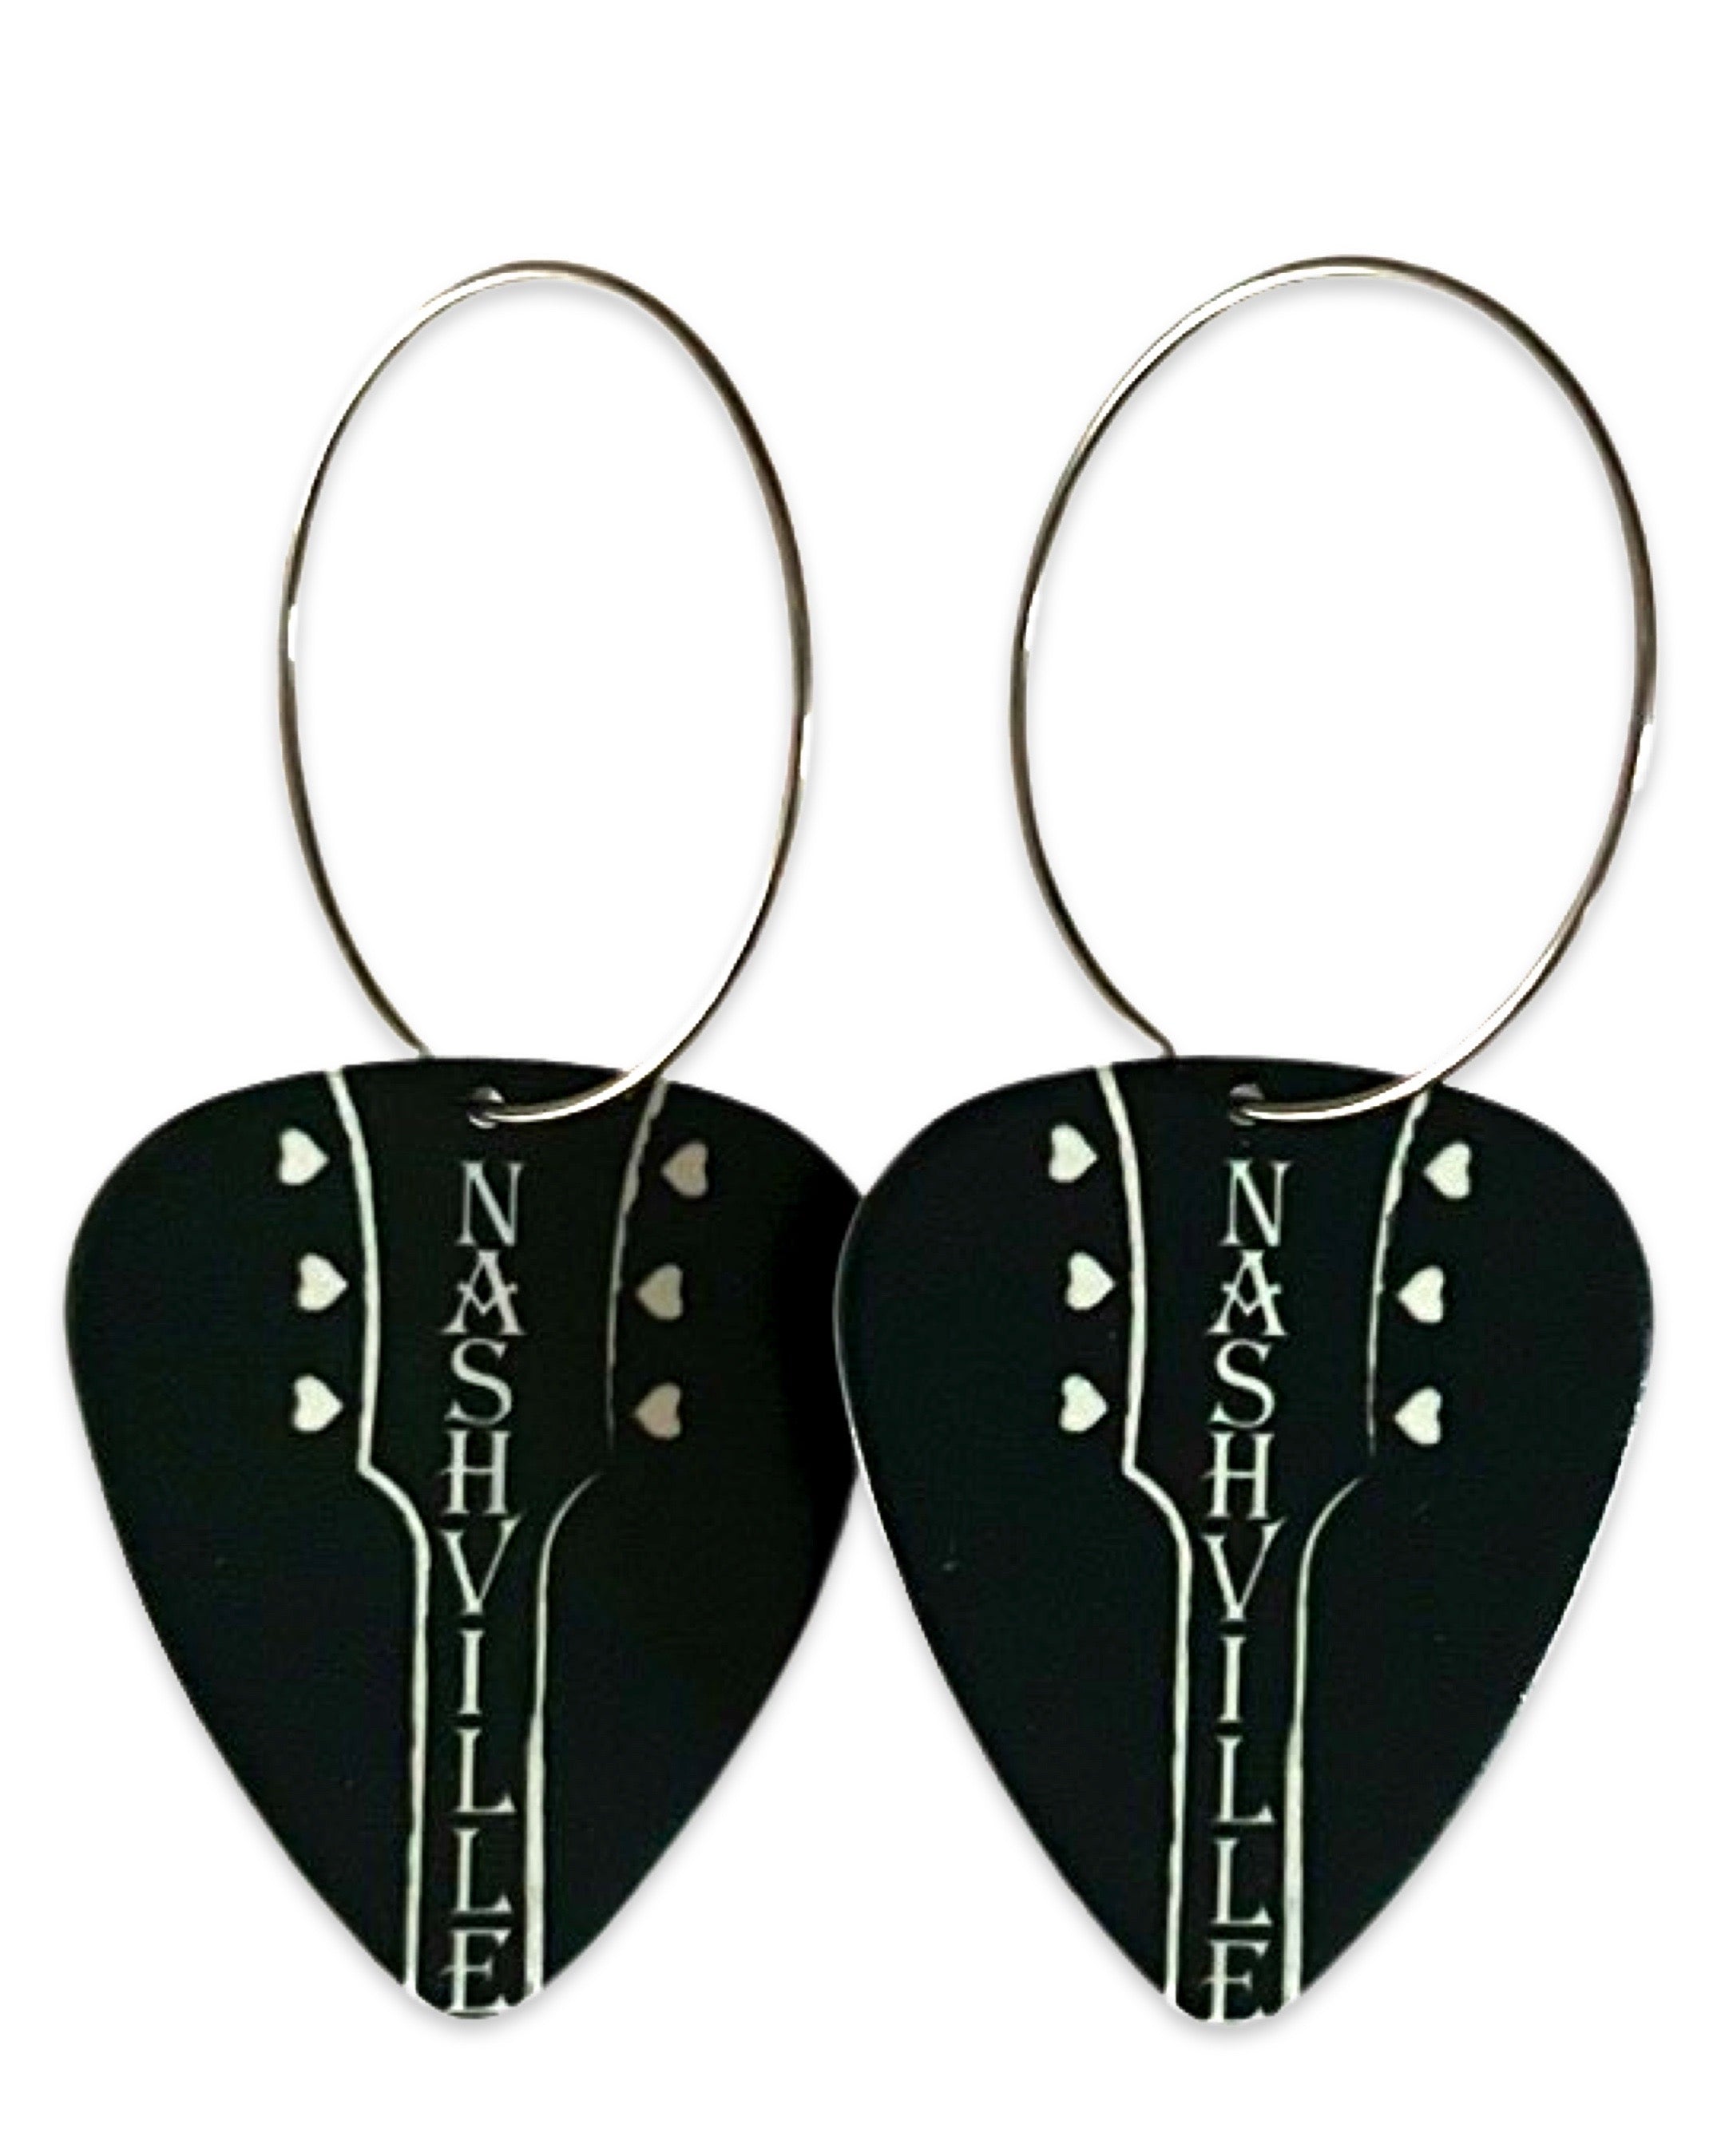 Nashville Guitar Single Guitar Pick Earrings